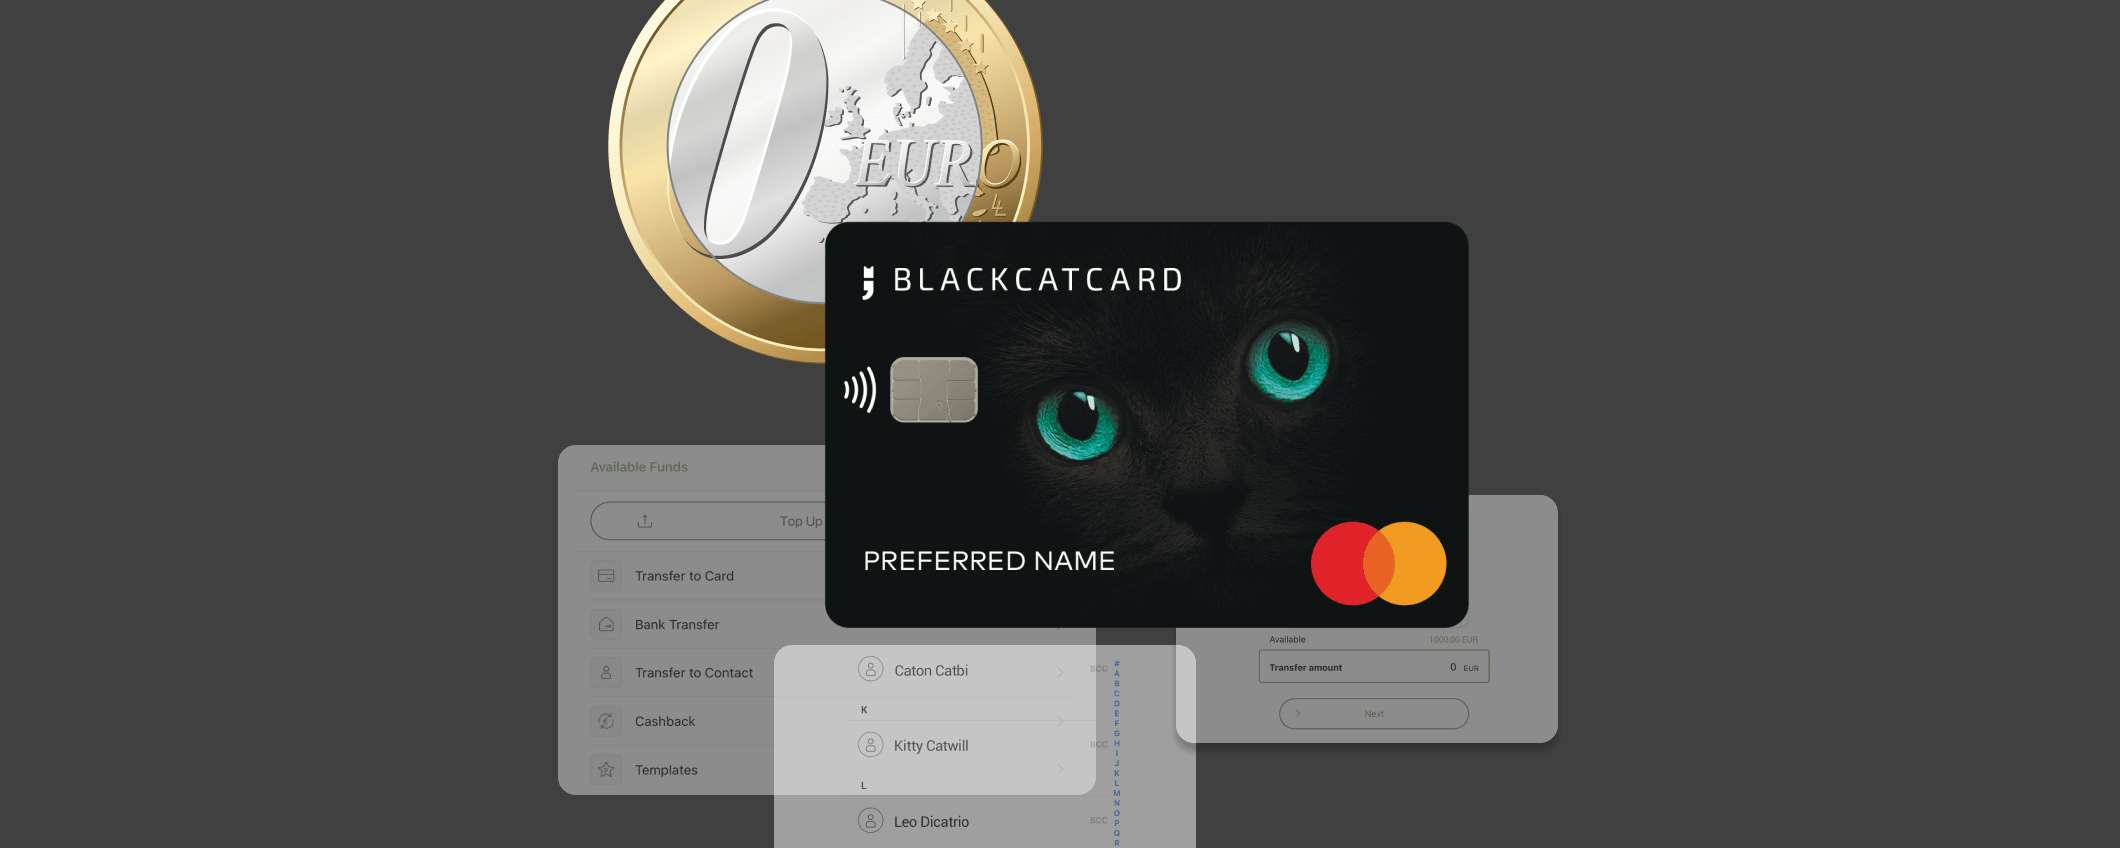 Blackcatcard: prepagata MasterCard con IBAN e rendimento del 5%